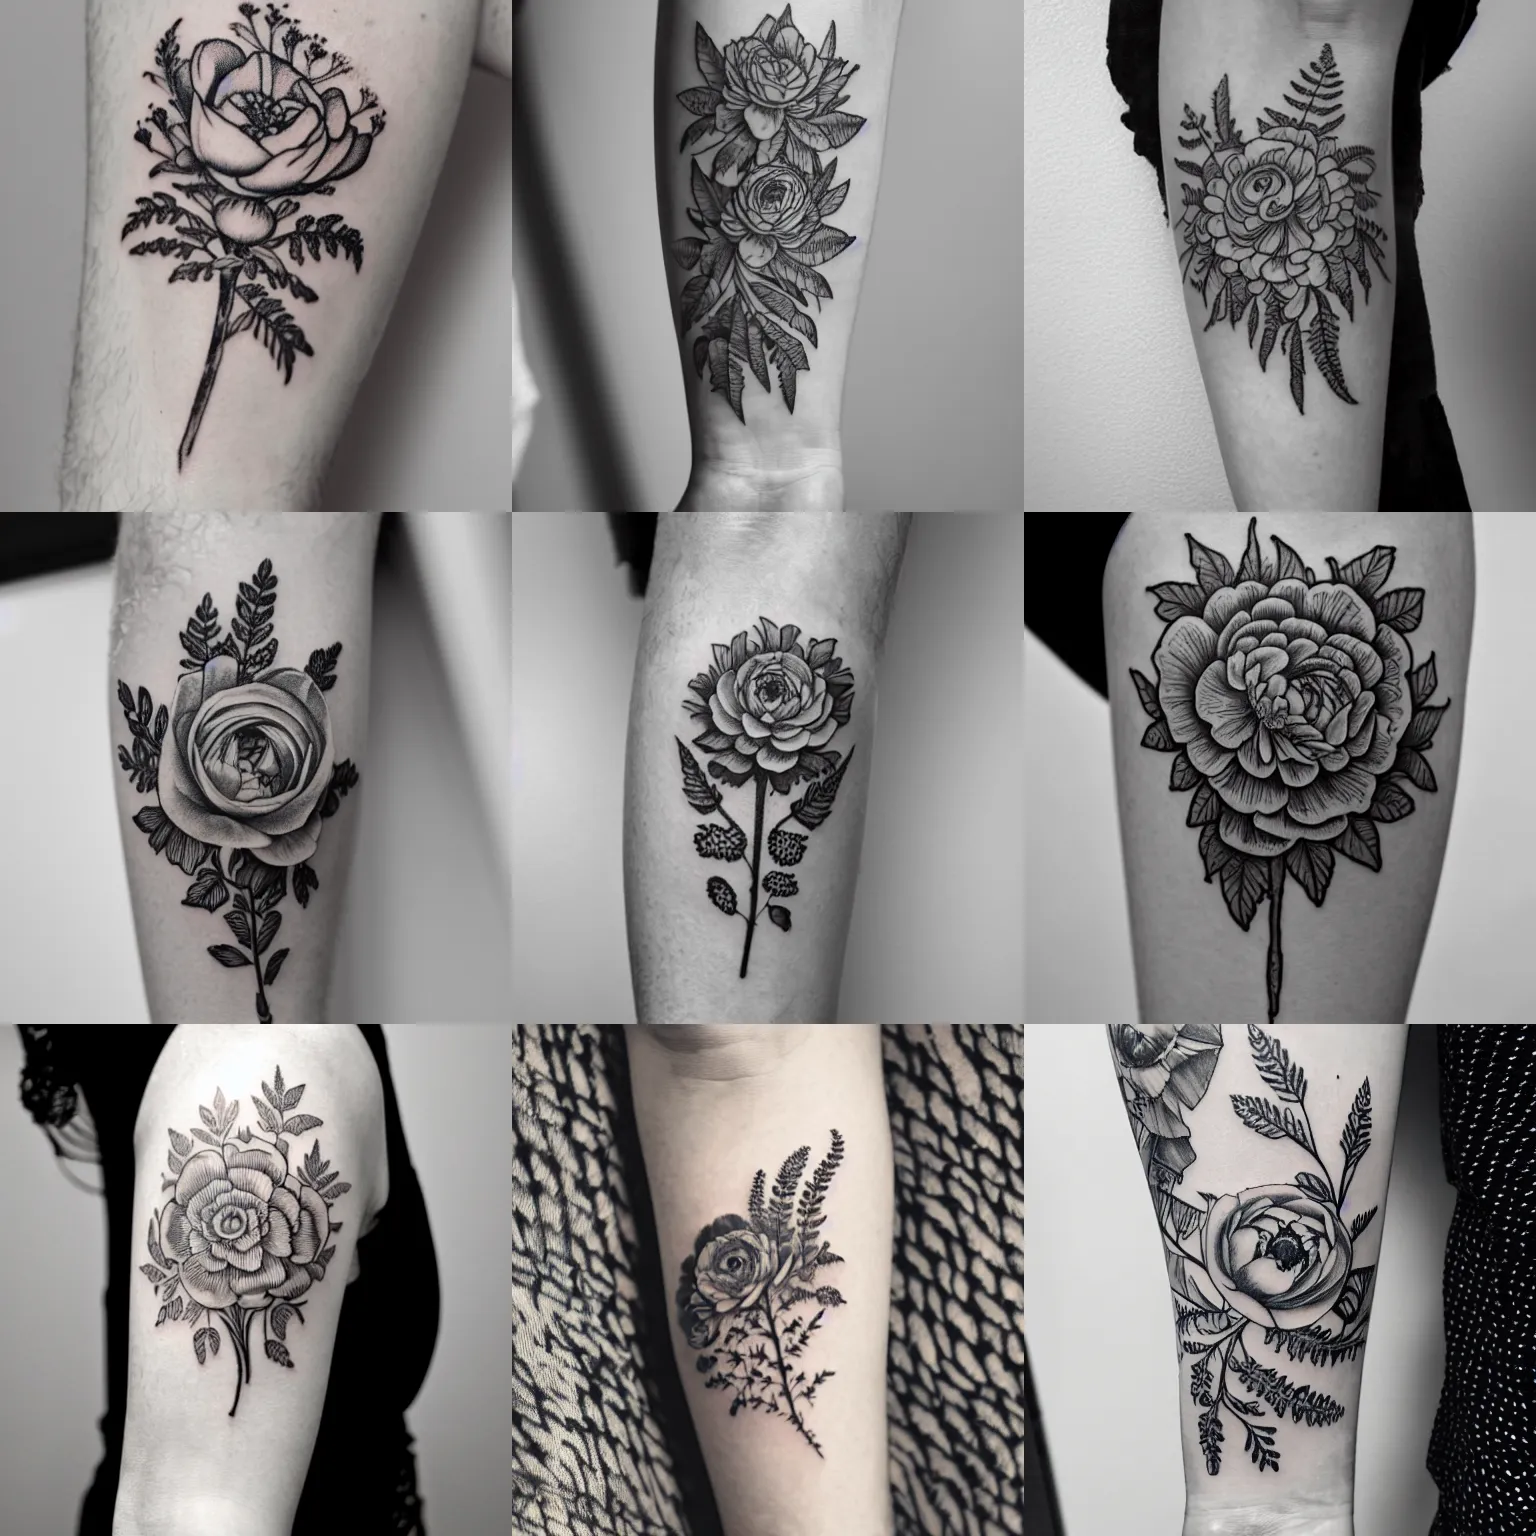 작고 은은한 꽃   tattoo tattoodesign nandotattoo tattooist flowertattoo  타투 타투도안 손목타투 타투이스트  Tiny flower tattoos Dainty flower tattoos  Beautiful tattoos